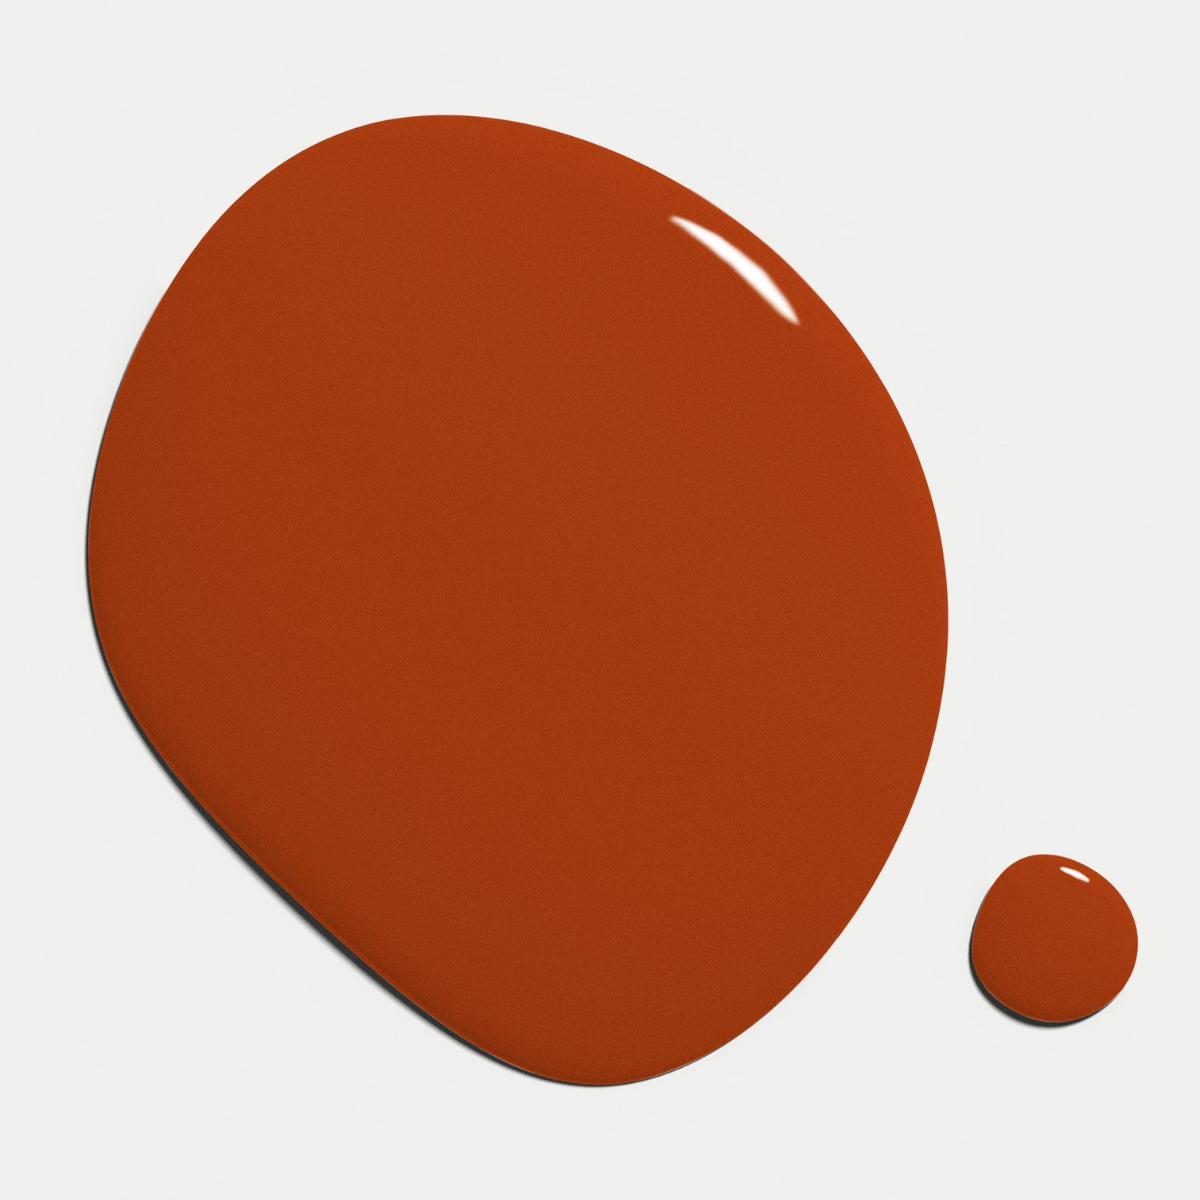 Nilens Jord Nail Polish – Burnt Orange 7652